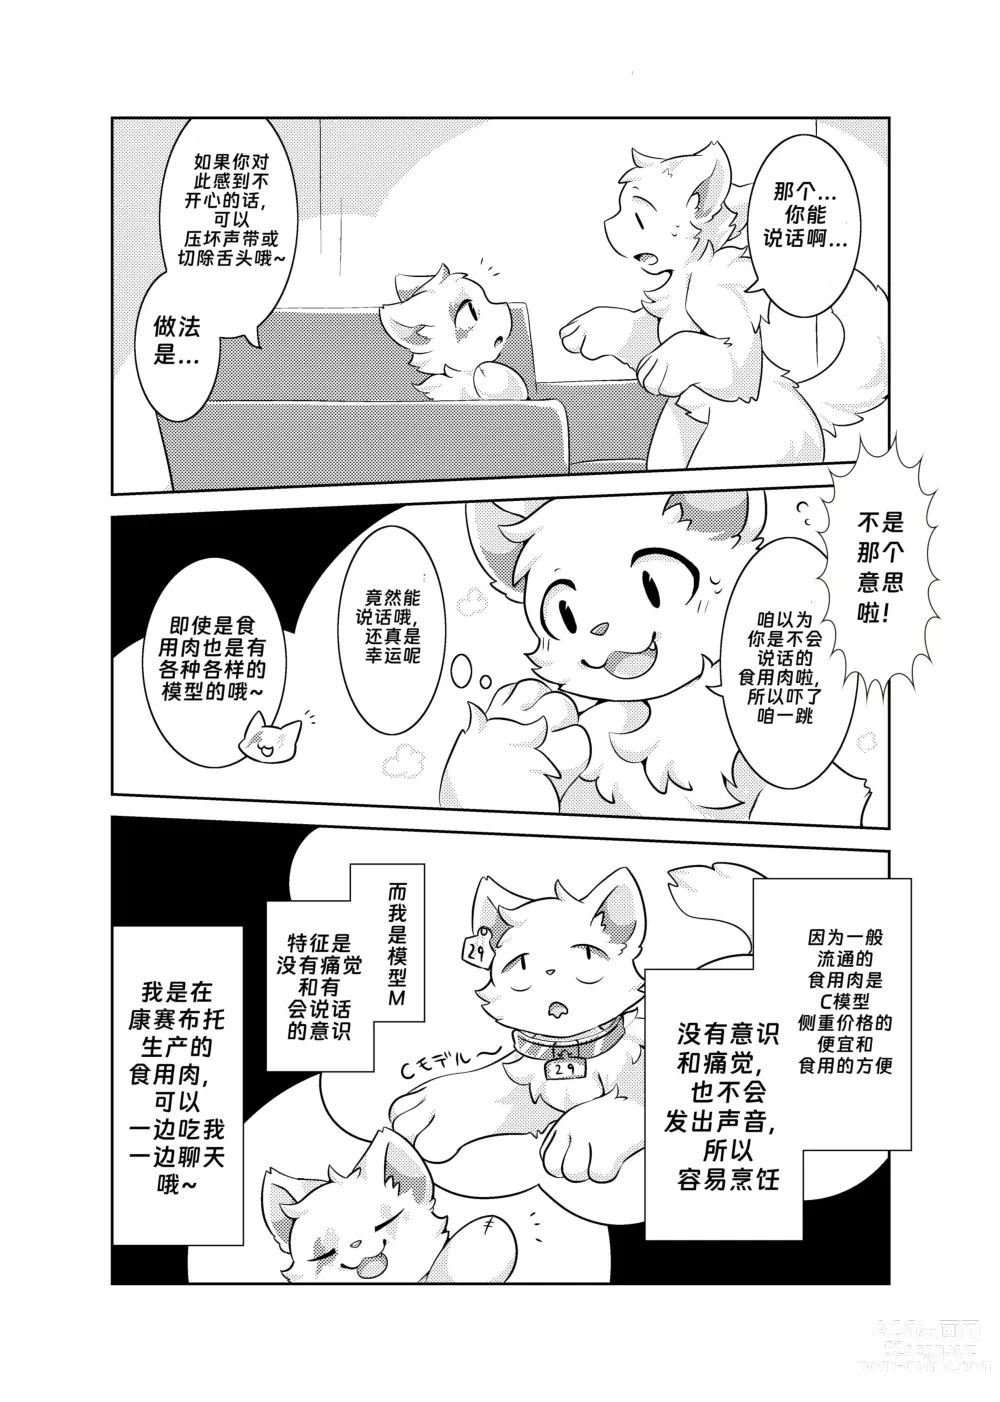 Page 6 of doujinshi Bokuyo motsuni no oishii seikatu.R-18G